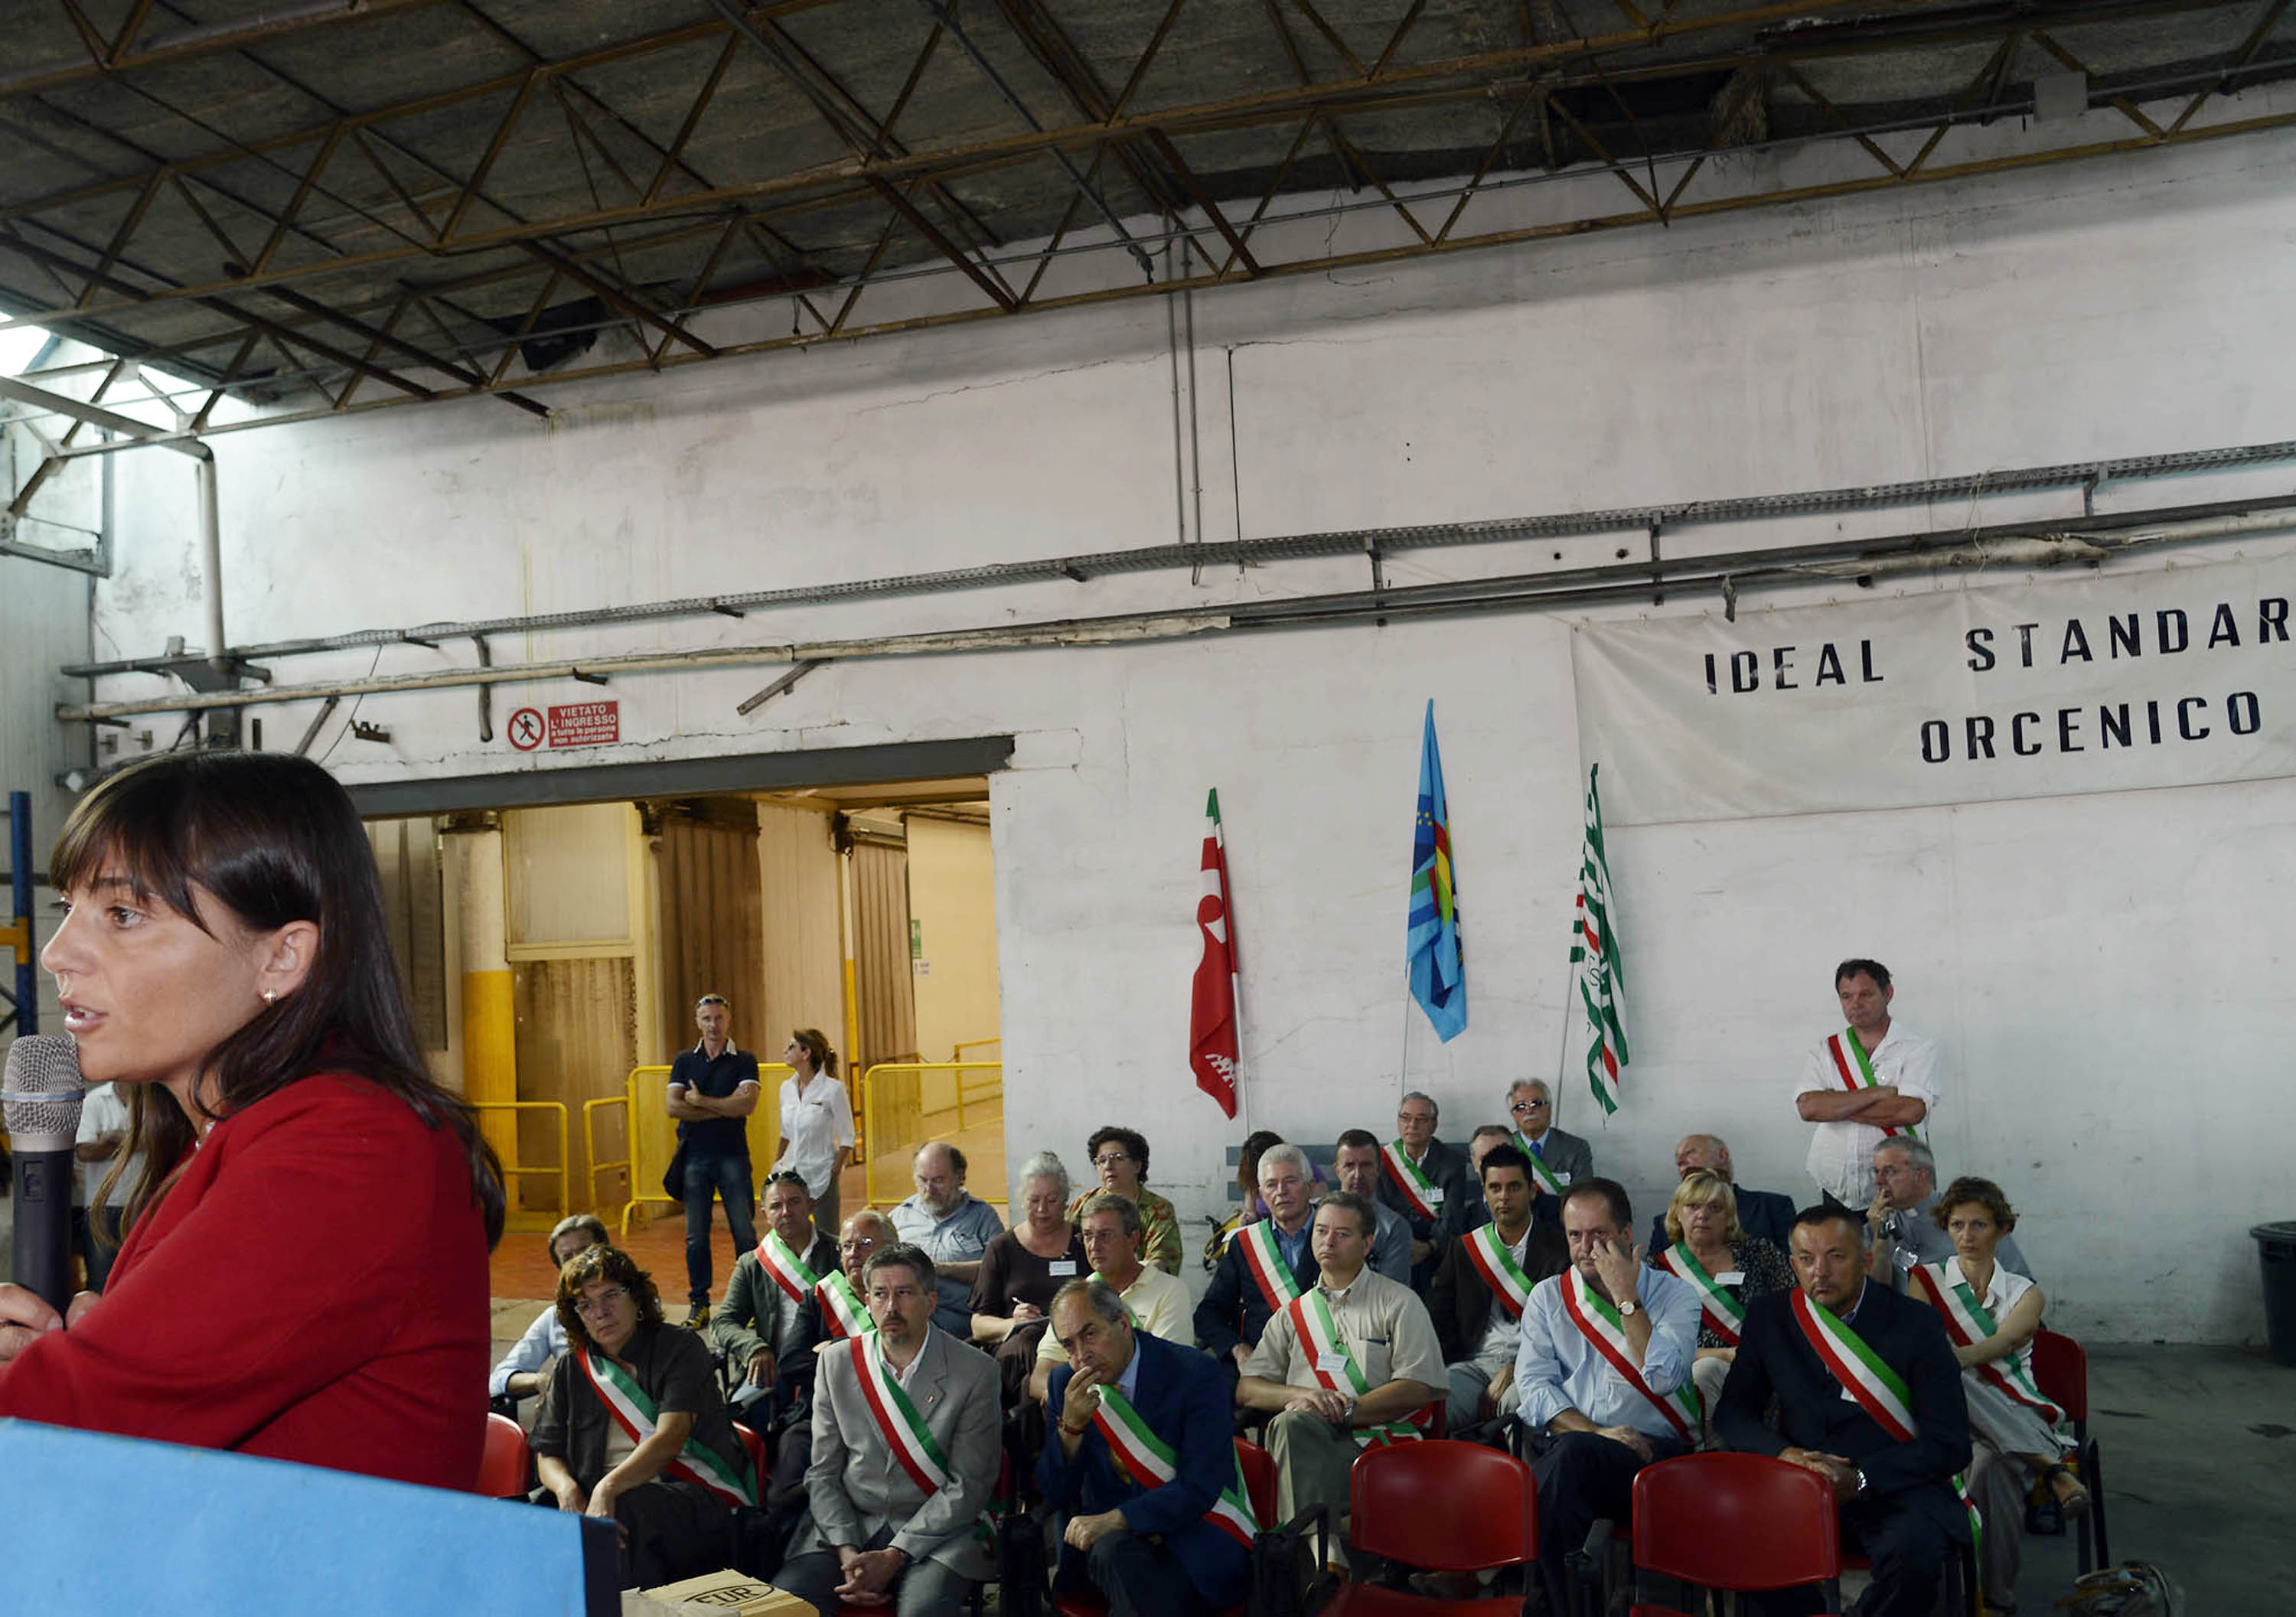 Debora Serracchiani (Presidente Friuli Venezia Giulia) interviene all'assemblea aperta convocata contro la chiusura dello stabilimento Ideal Standard. [Orcenico di Zoppola (PN) 24/07/13]